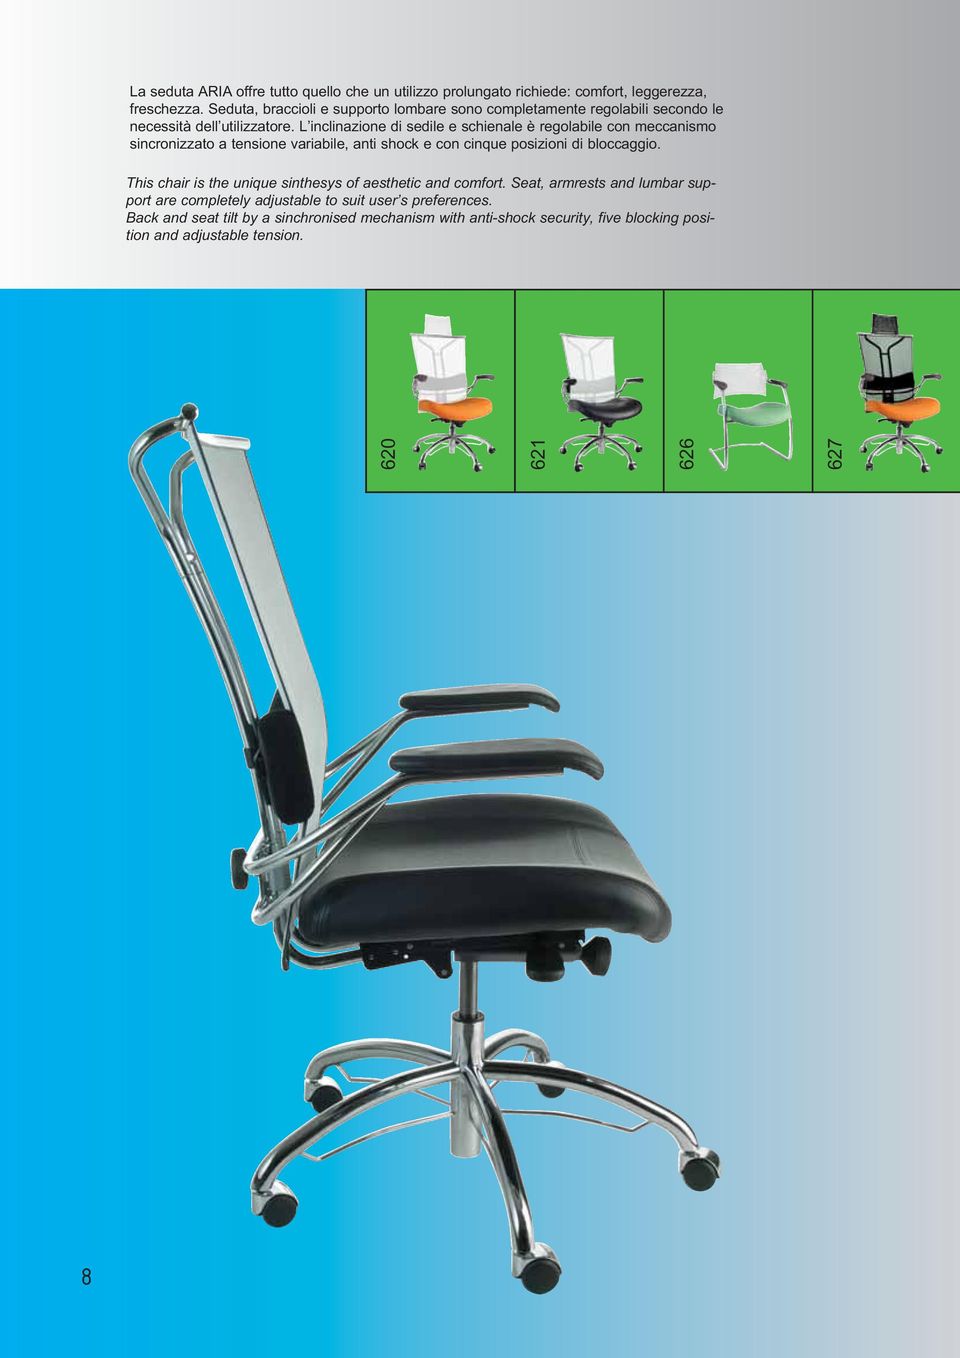 L inclinazione di sedile e schienale è regolabile con meccanismo sincronizzato a tensione variabile, anti shock e con cinque posizioni di bloccaggio.